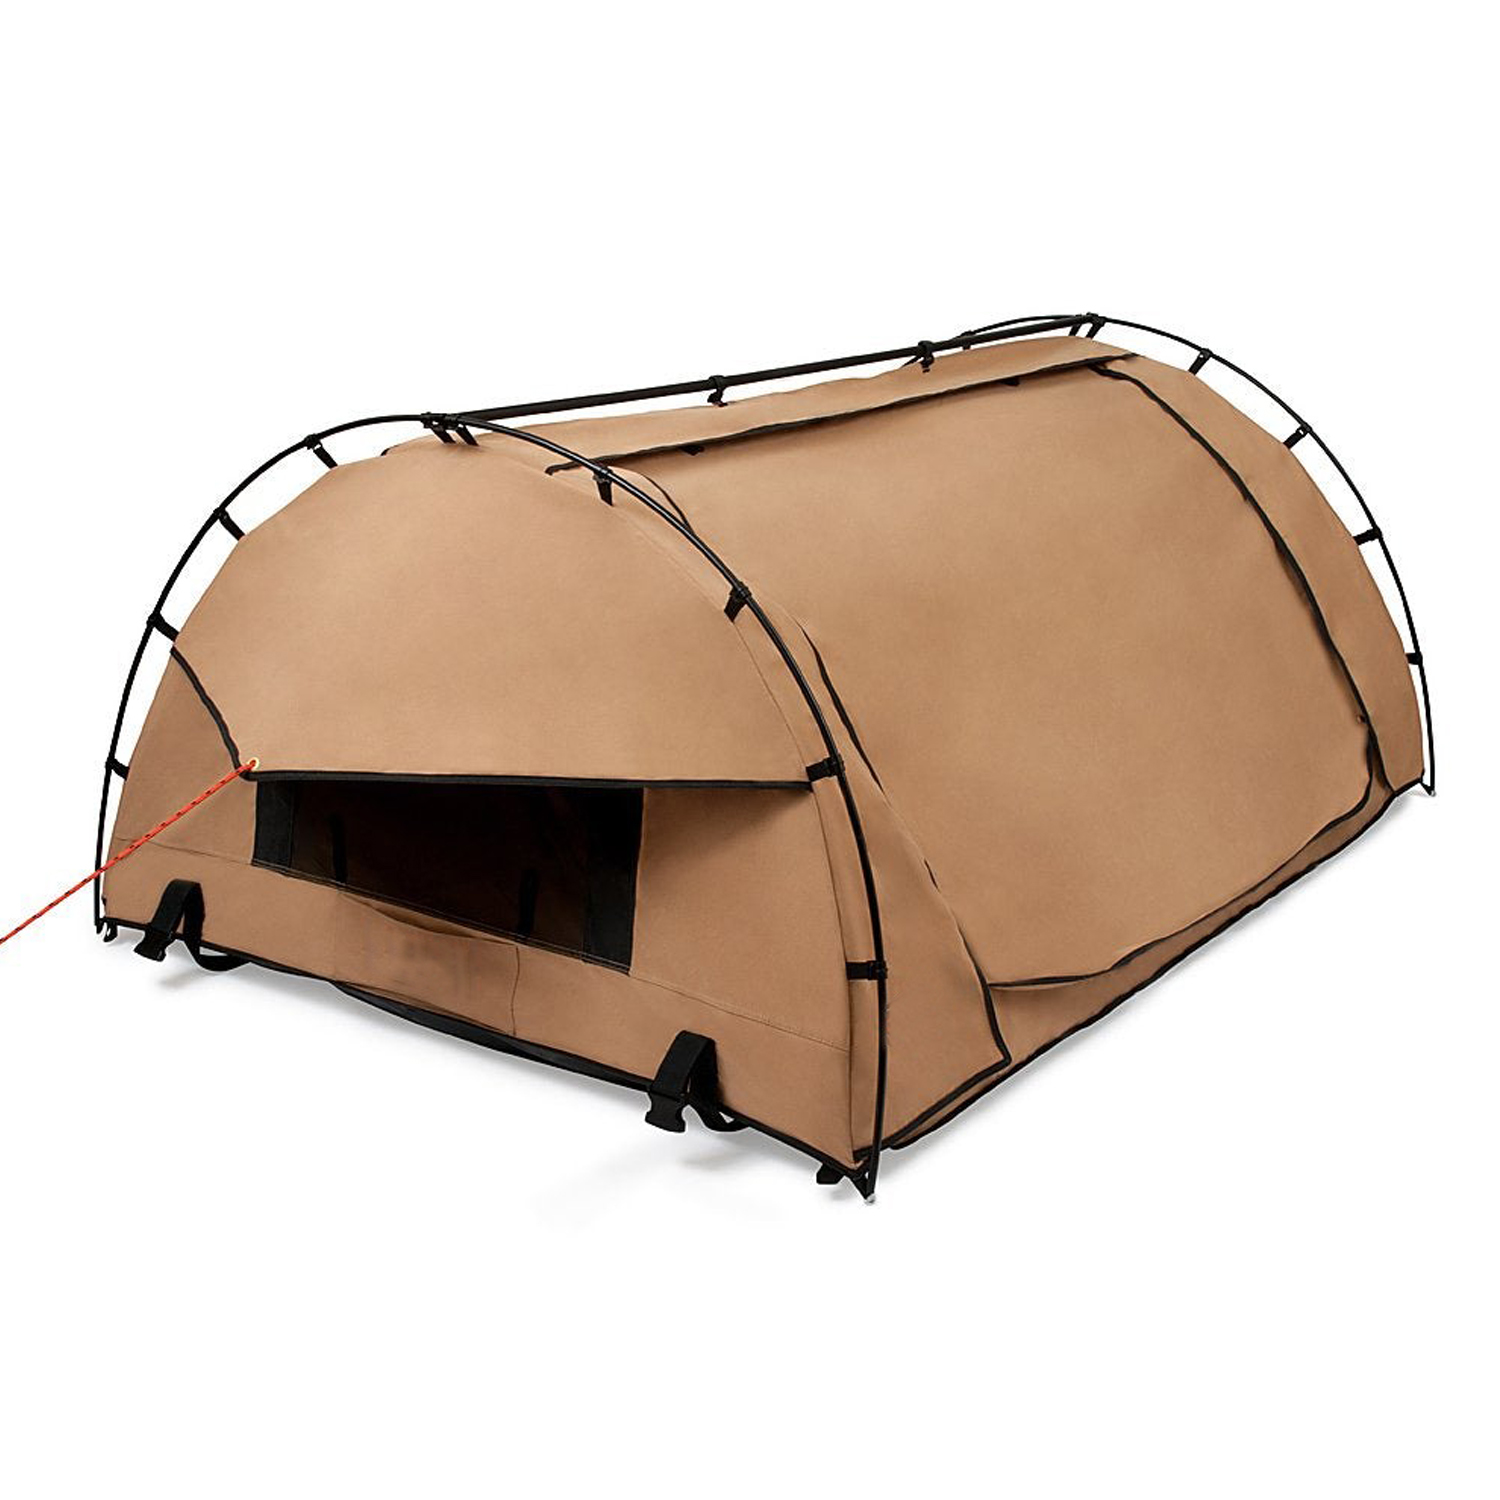 Waterproof Canvas Swag Camping Tent - 4 Seasons, UV Resistant